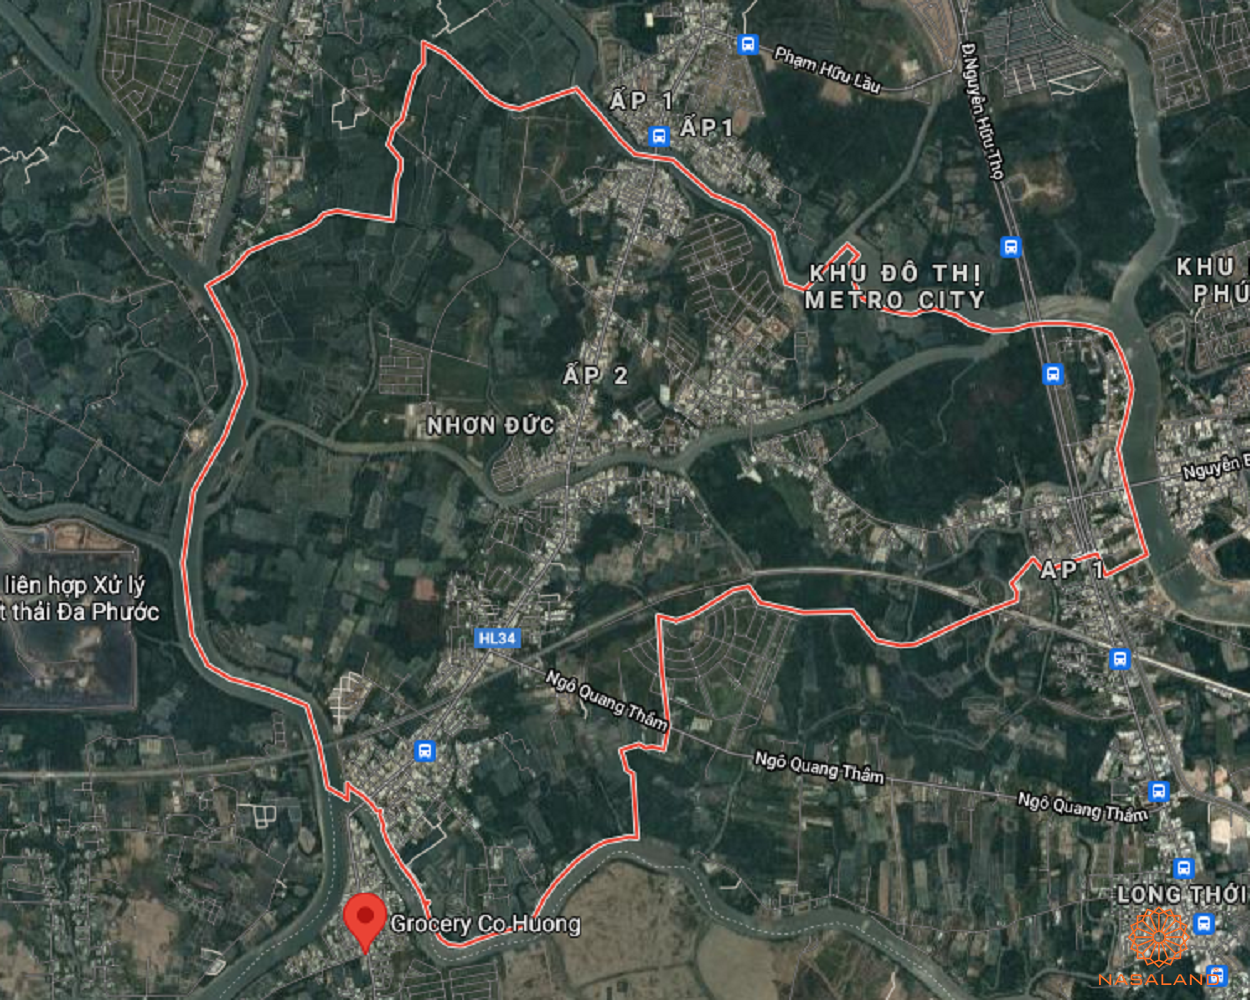 Quy hoạch sử dụng đất Xã Nhơn Đức Huyện Nhà Bè thể hiện trên bản đồ quy hoạch phân khu tỷ lệ 1/2000 của TP. HCM